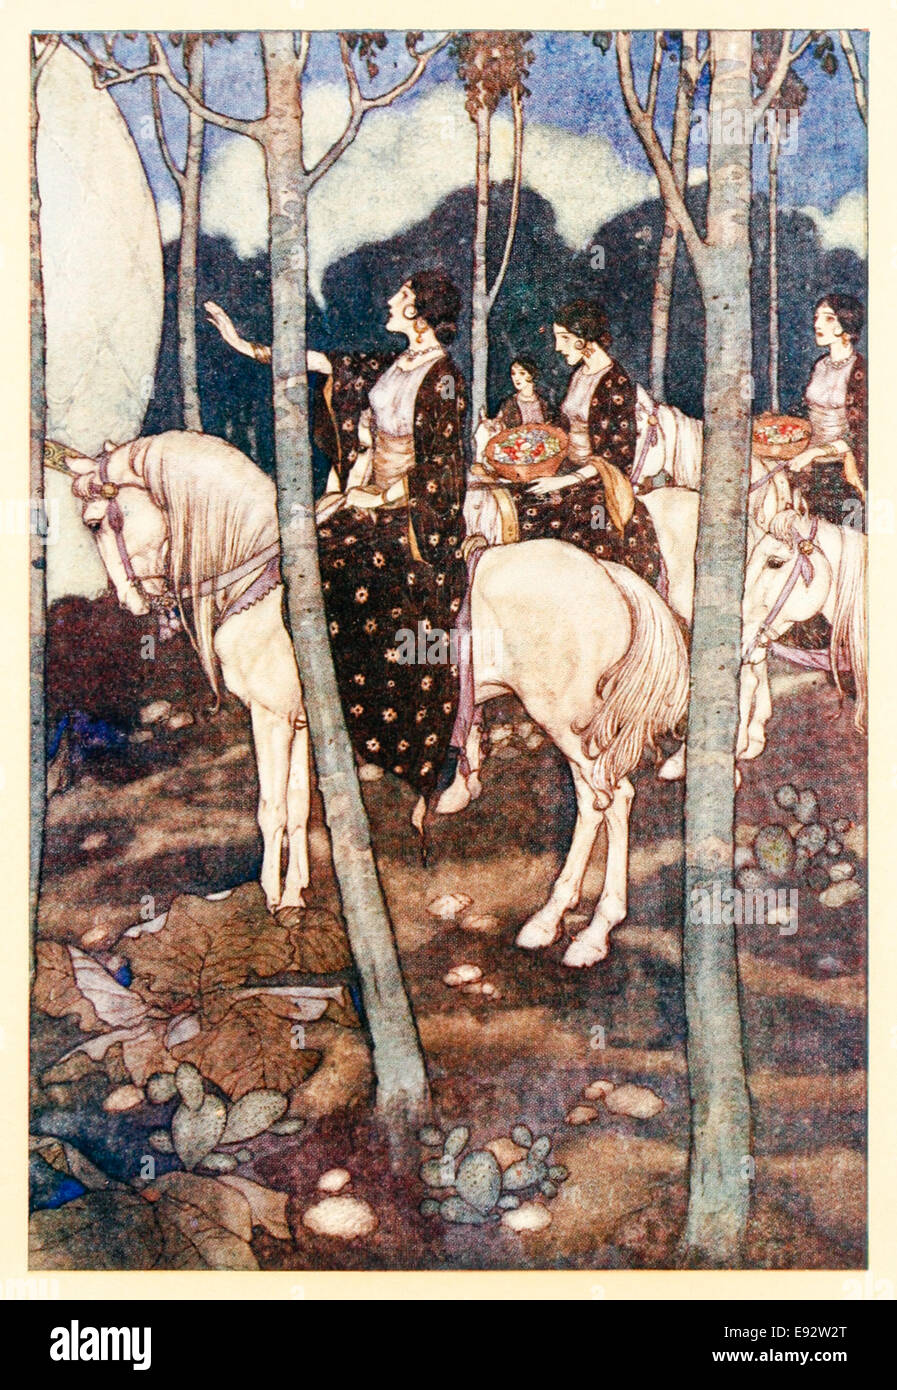 Jungfrauen auf weißen Pferden mit Körben von Edelsteinen - Edmund Dulac Illustration aus "The Story of Wicked Halbbrüder" in "Geschichten aus Tausendundeiner Nacht". Siehe Beschreibung weitere Informationen Stockfoto